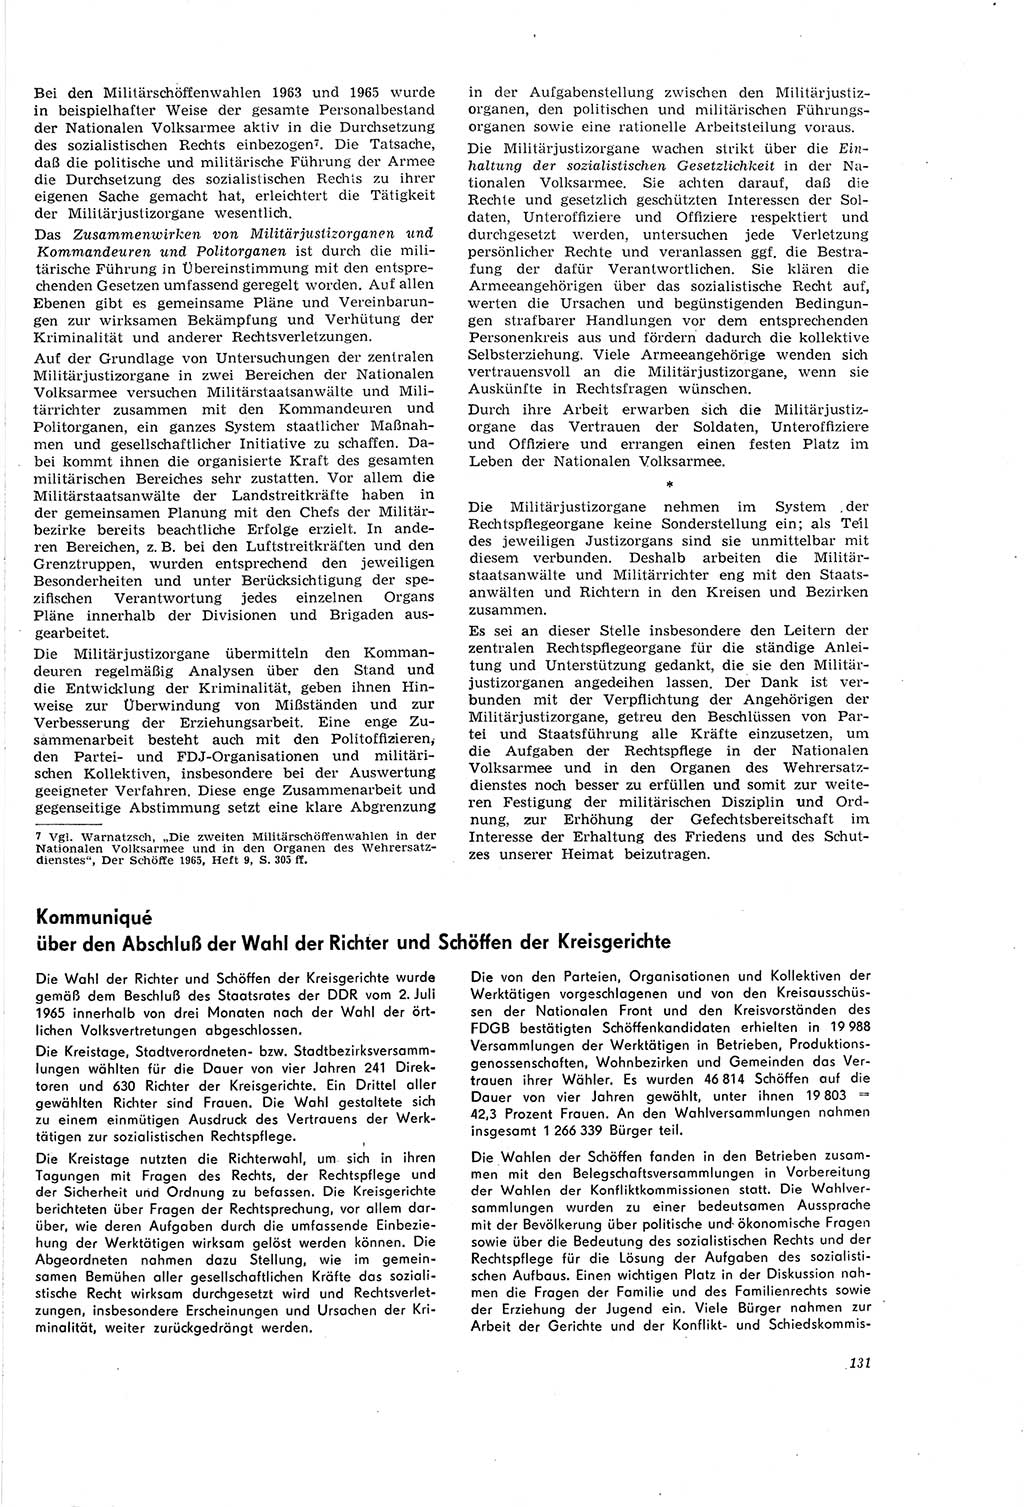 Neue Justiz (NJ), Zeitschrift für Recht und Rechtswissenschaft [Deutsche Demokratische Republik (DDR)], 20. Jahrgang 1966, Seite 131 (NJ DDR 1966, S. 131)